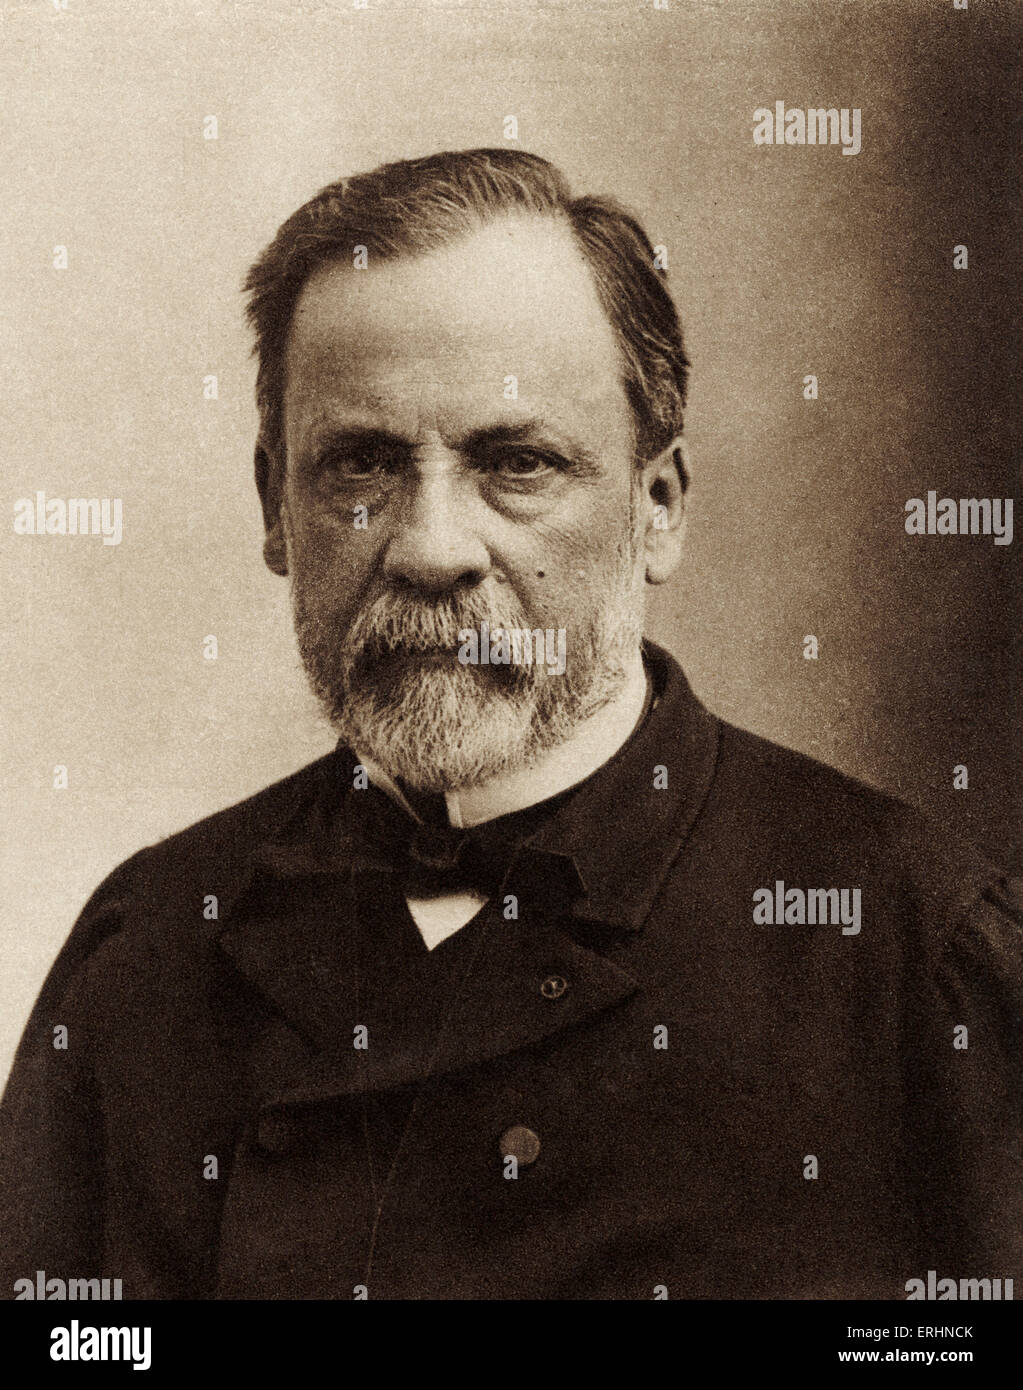 Louis Pasteur - ritratto - chimico francese, biologo e fondatore della moderna batteriologia -27 dicembre 1822 - 28 Settembre 1895 Foto Stock